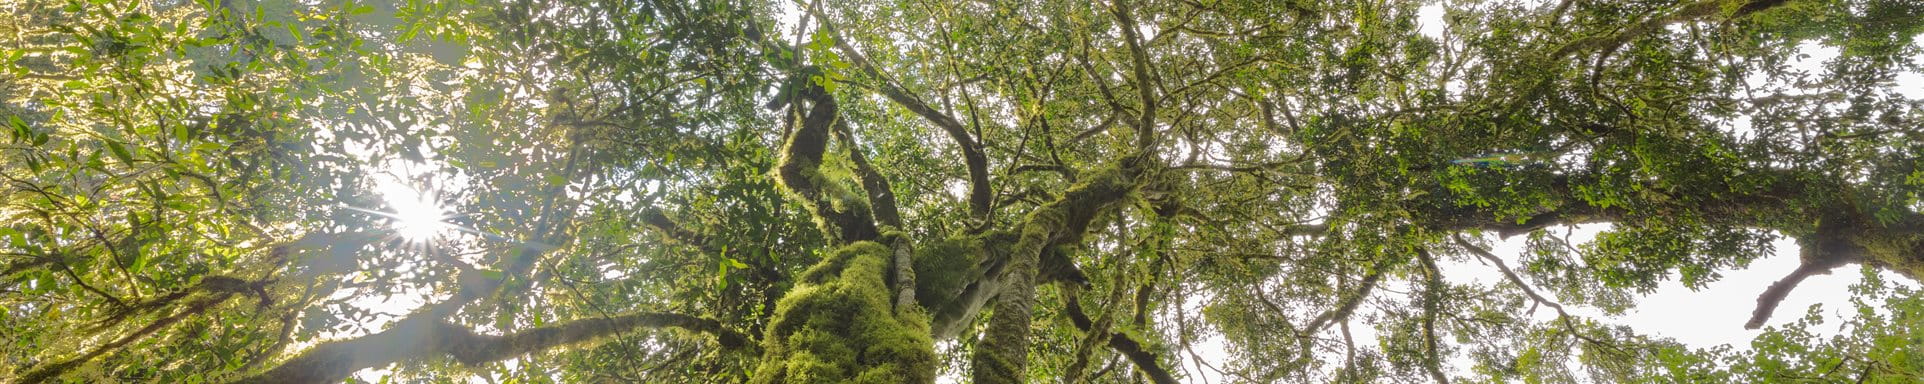 Arbre vert avec de nombreuses branches